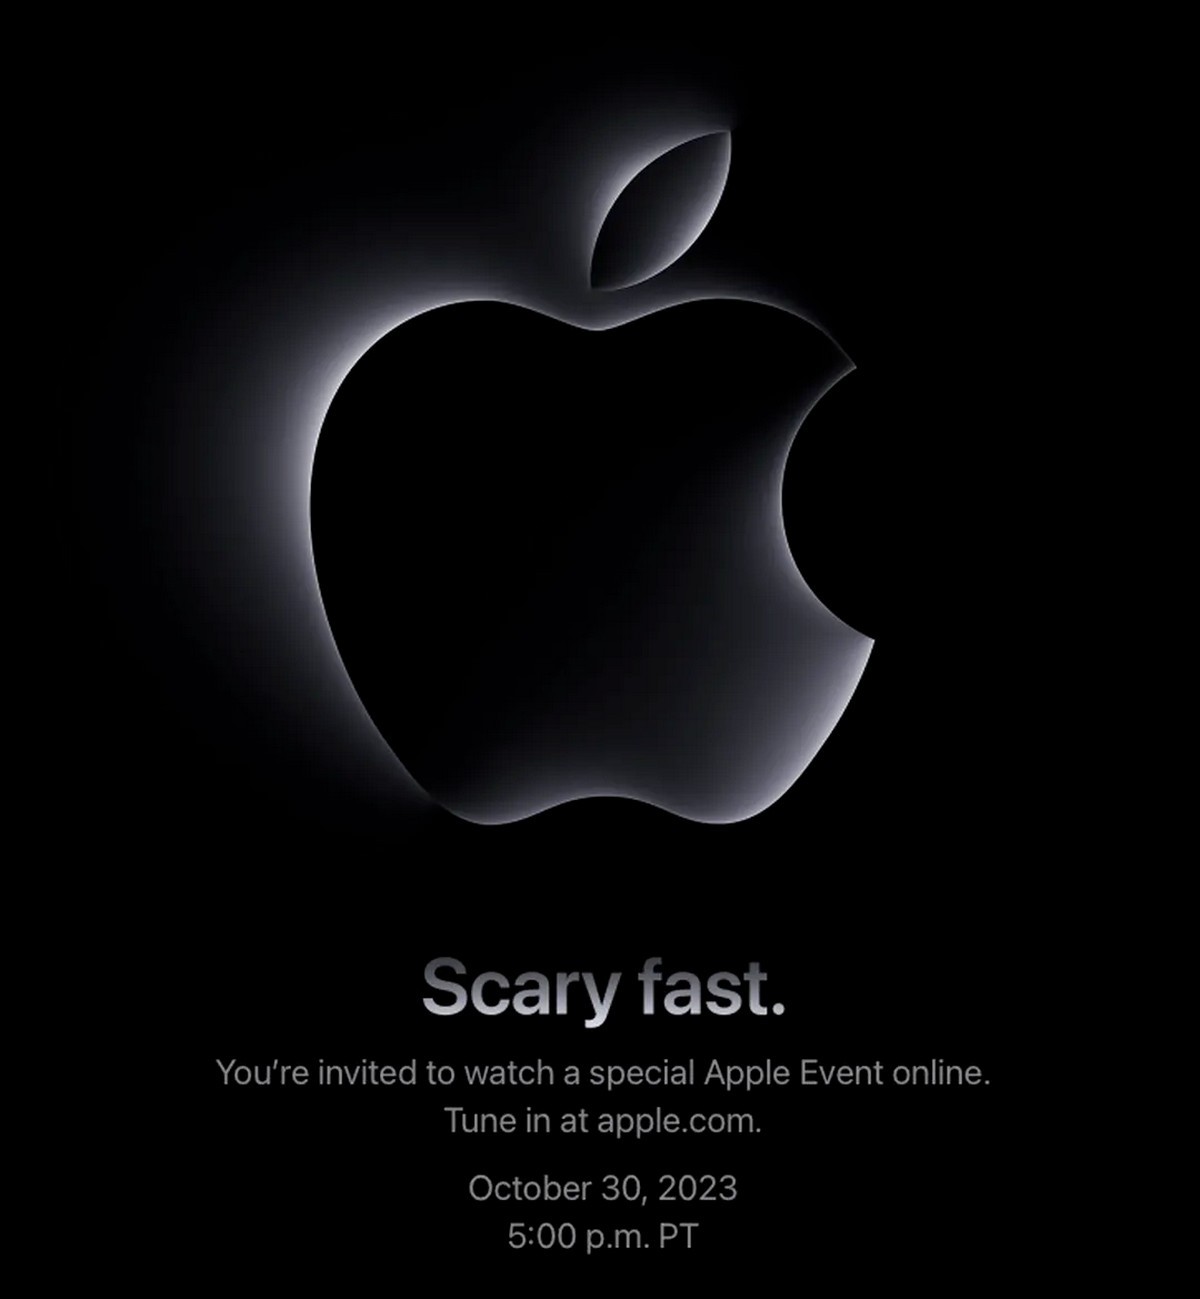 اپل رویداد “سریع ترسناک” را برای ۳۰ اکتبر اعلام می کند، انتظار می رود مک های جدید